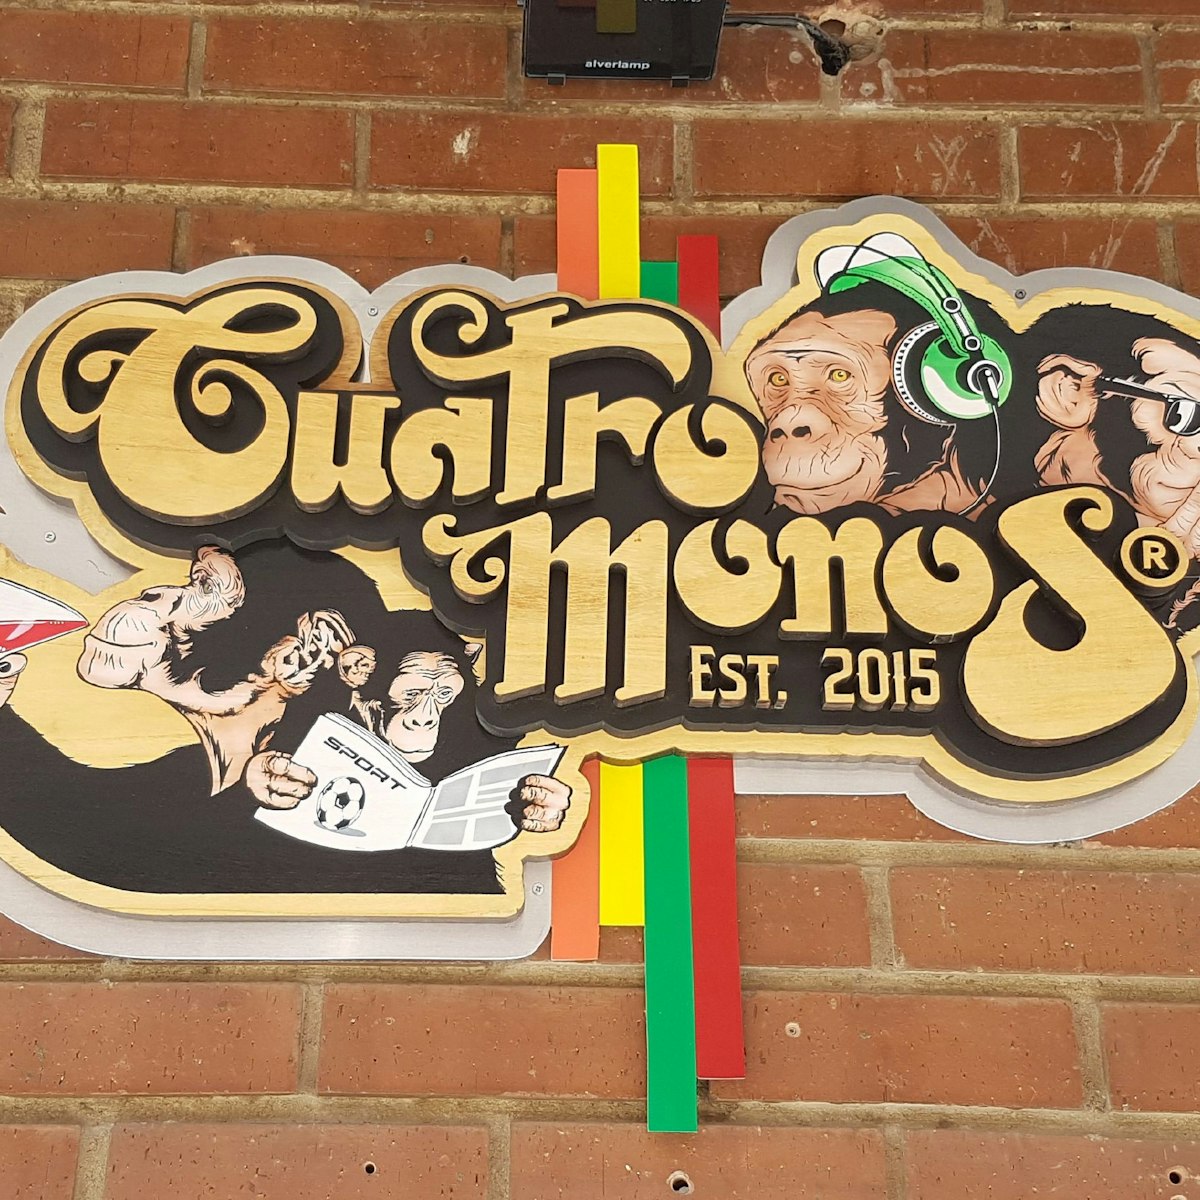 Cuatro Monos sign outside the bar.